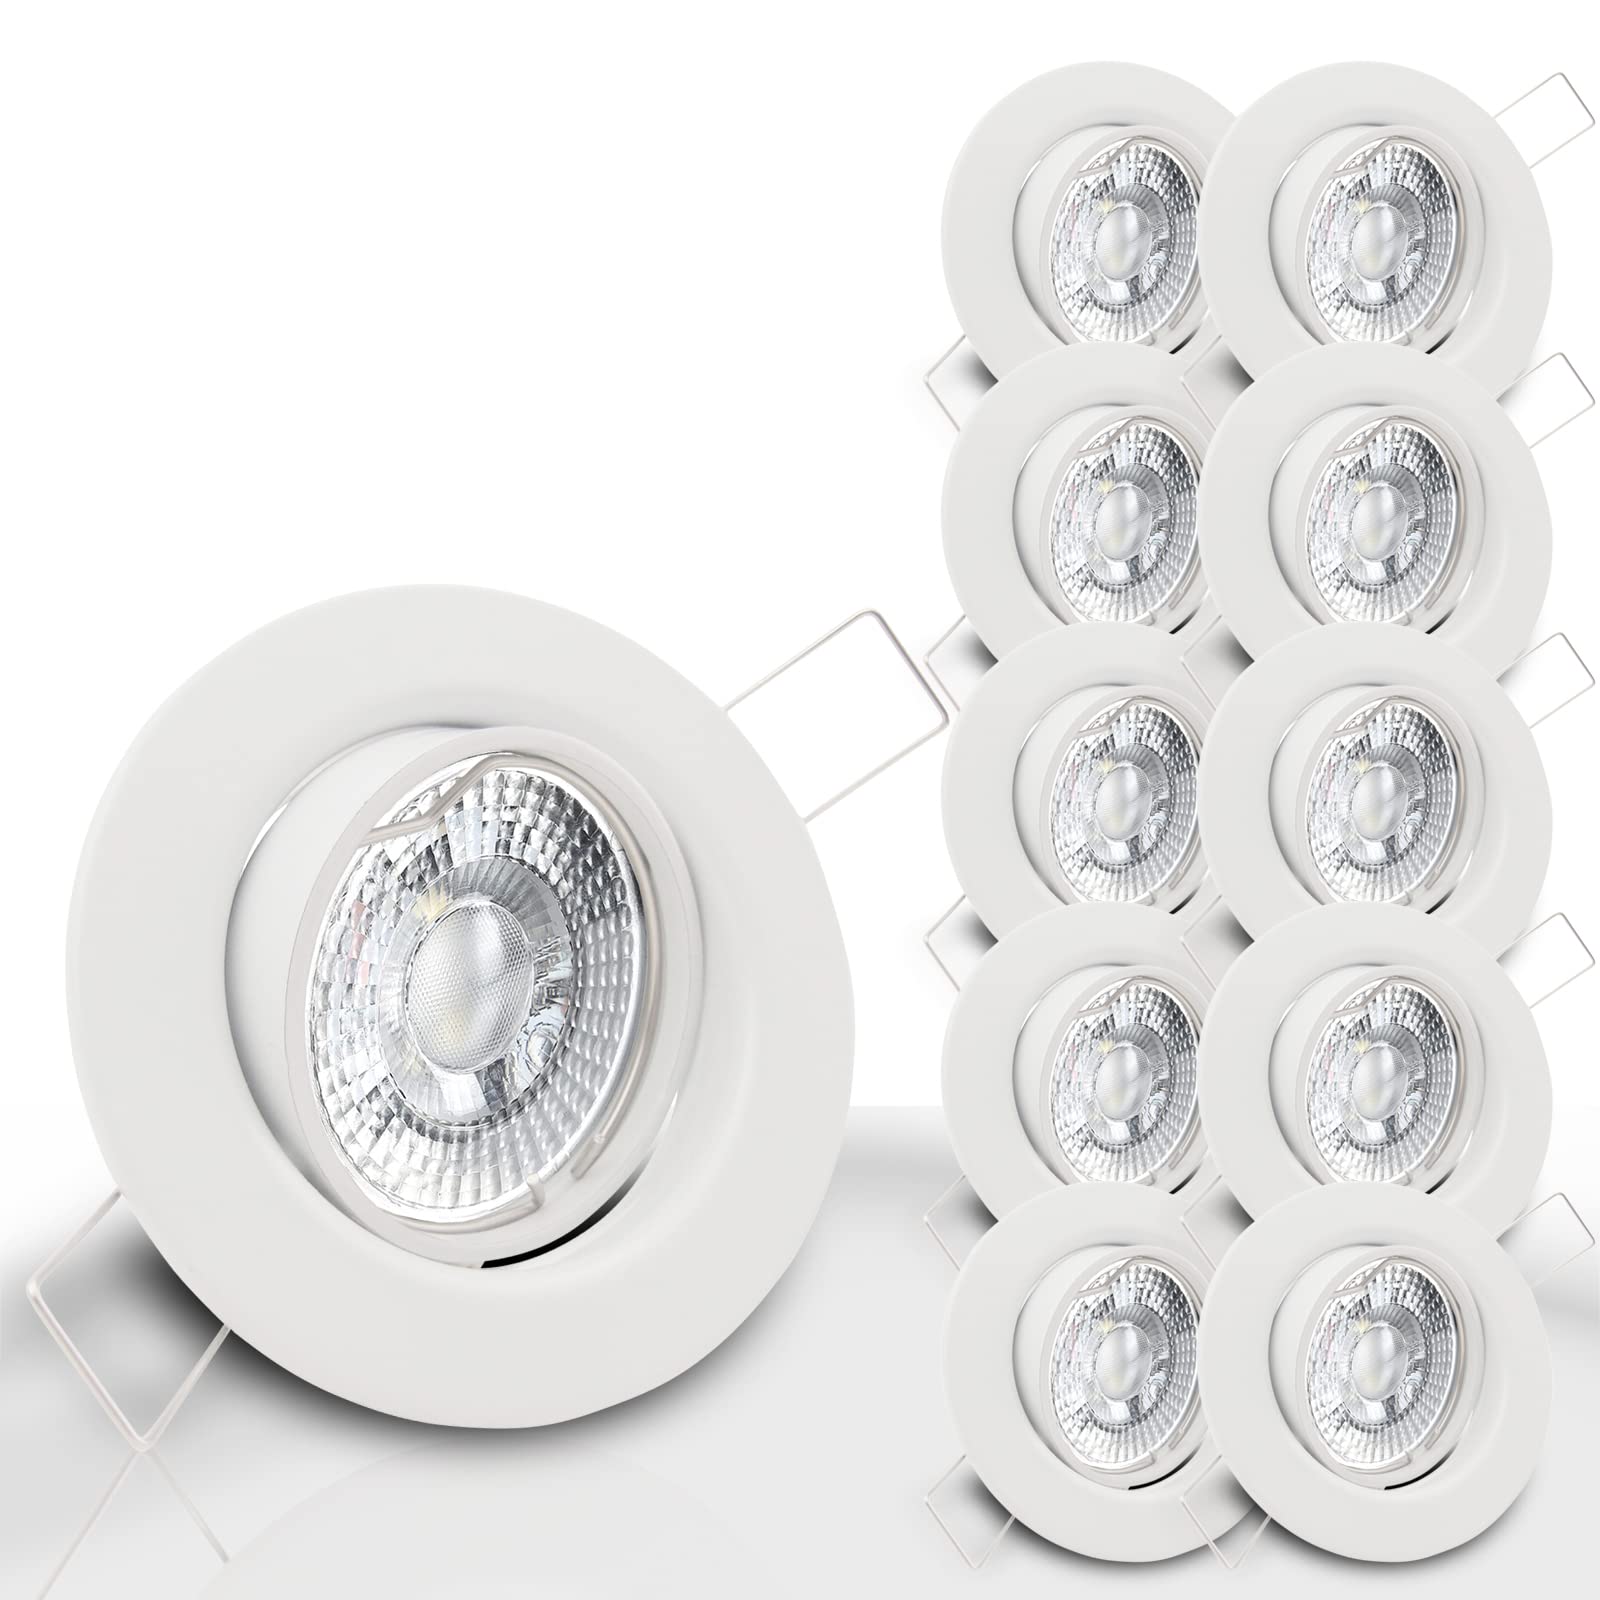 trendlights24 Decora LED Einbaustrahler 230V Weiß rund dimmbar, 10er Set Spots 7W GU10 Warmweiß, Decken Einbauleuchte 68 mm, schwenkbar